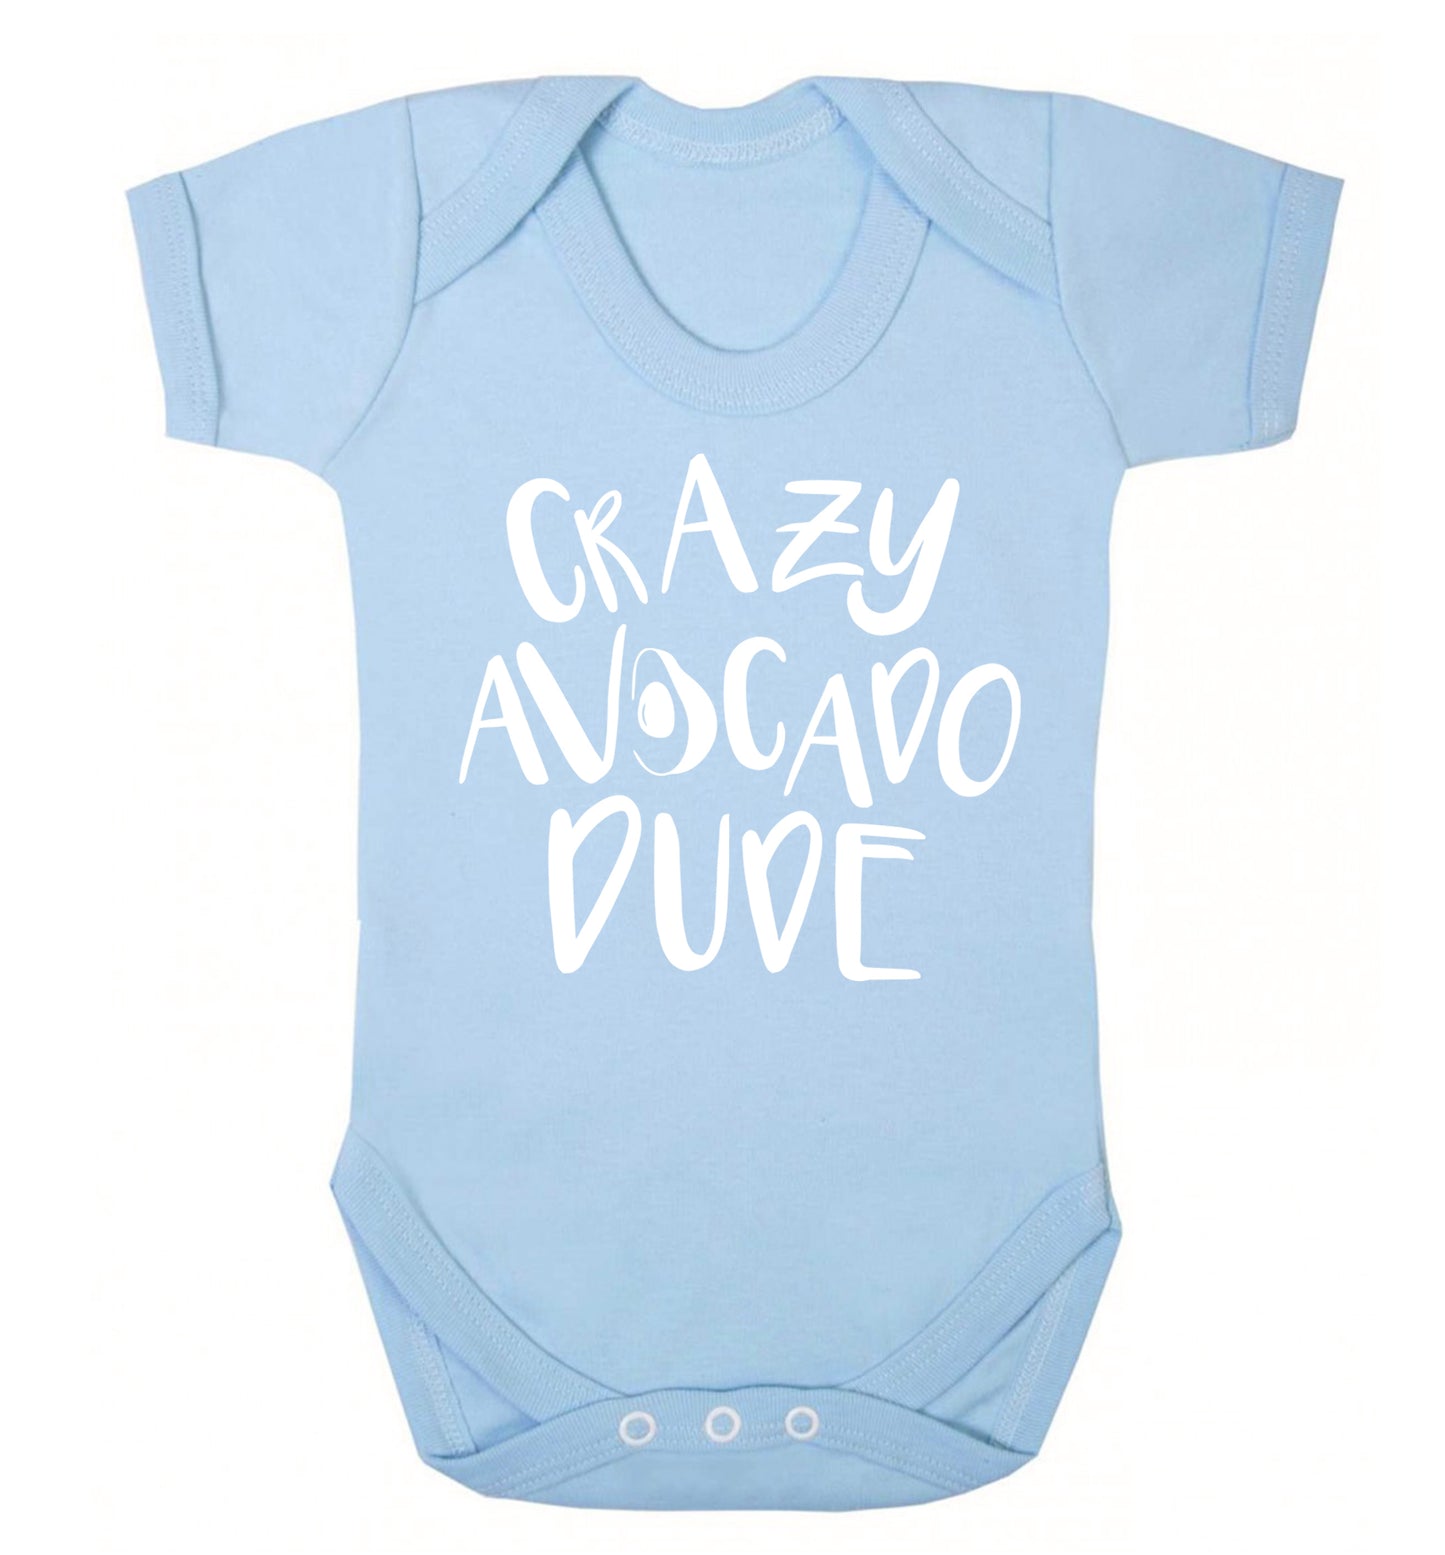 Crazy avocado dude Baby Vest pale blue 18-24 months